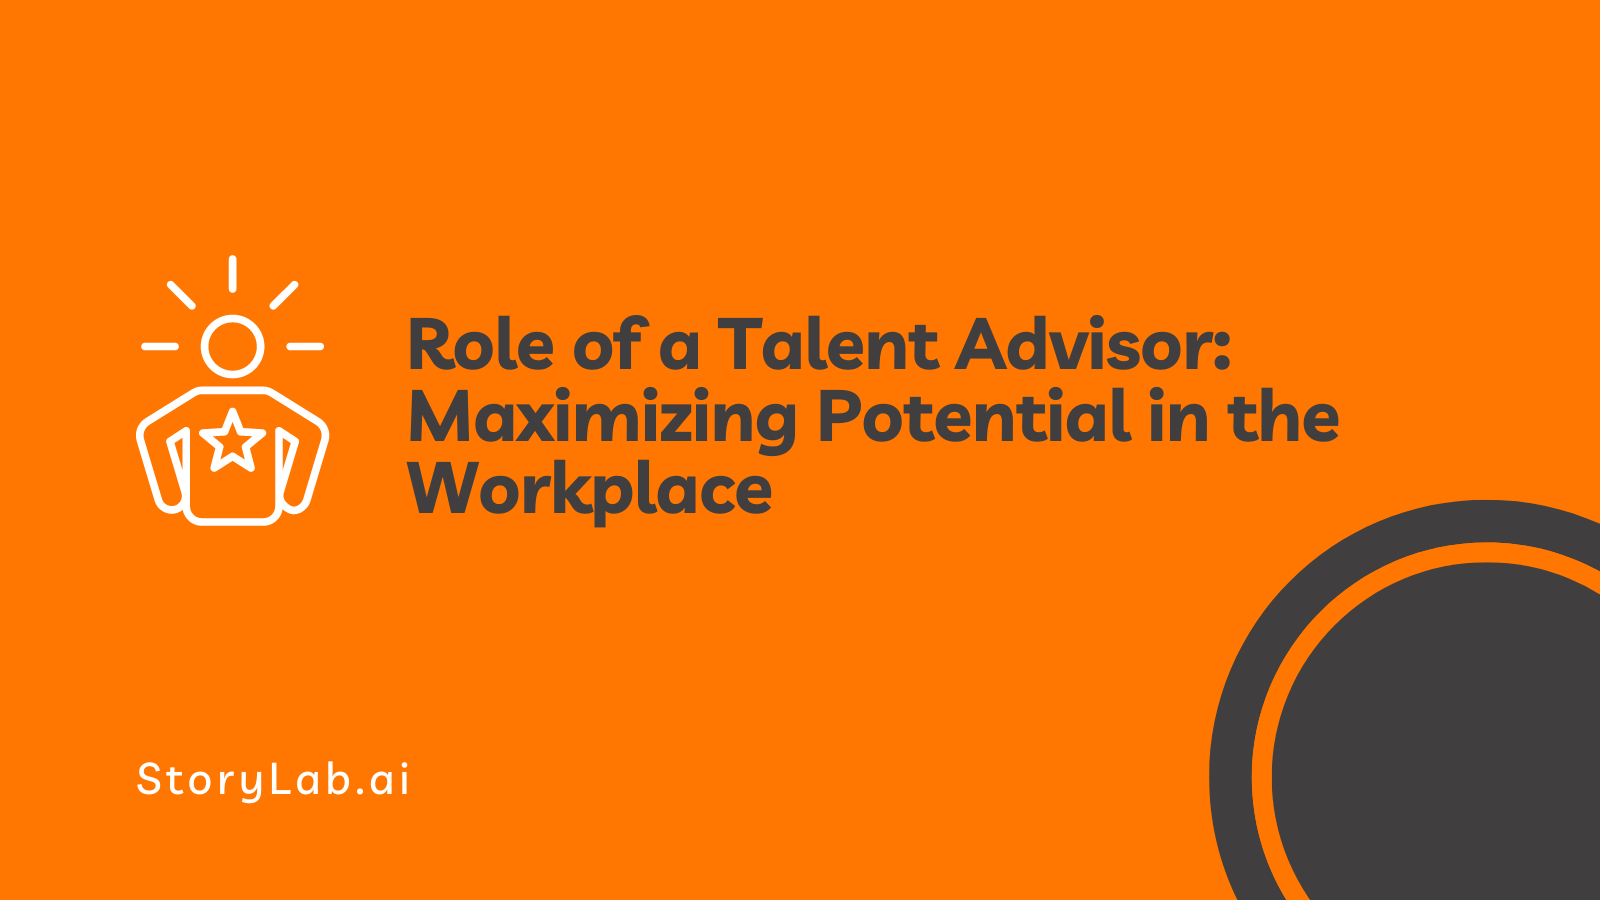 Papel de um consultor de talentos maximizando o potencial no local de trabalho